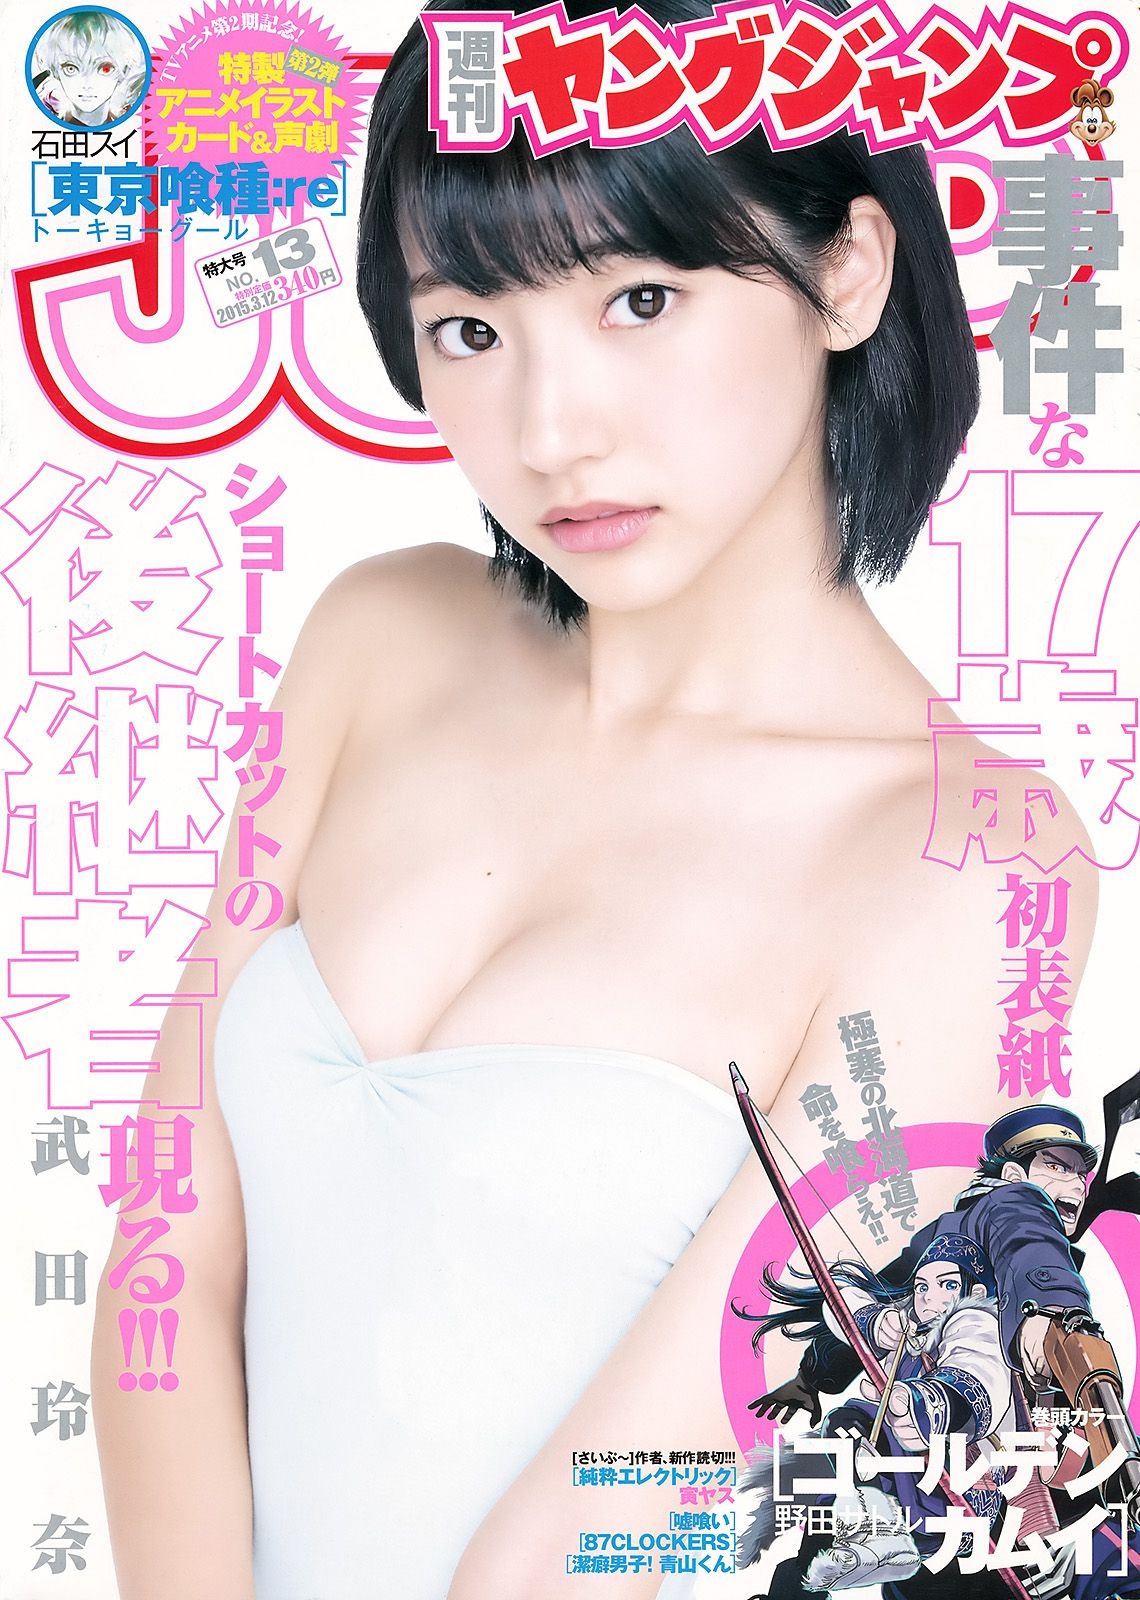 武田玲奈 山地まり [Weekly Young Jump] 2015年No.13 写真杂志  第-1张